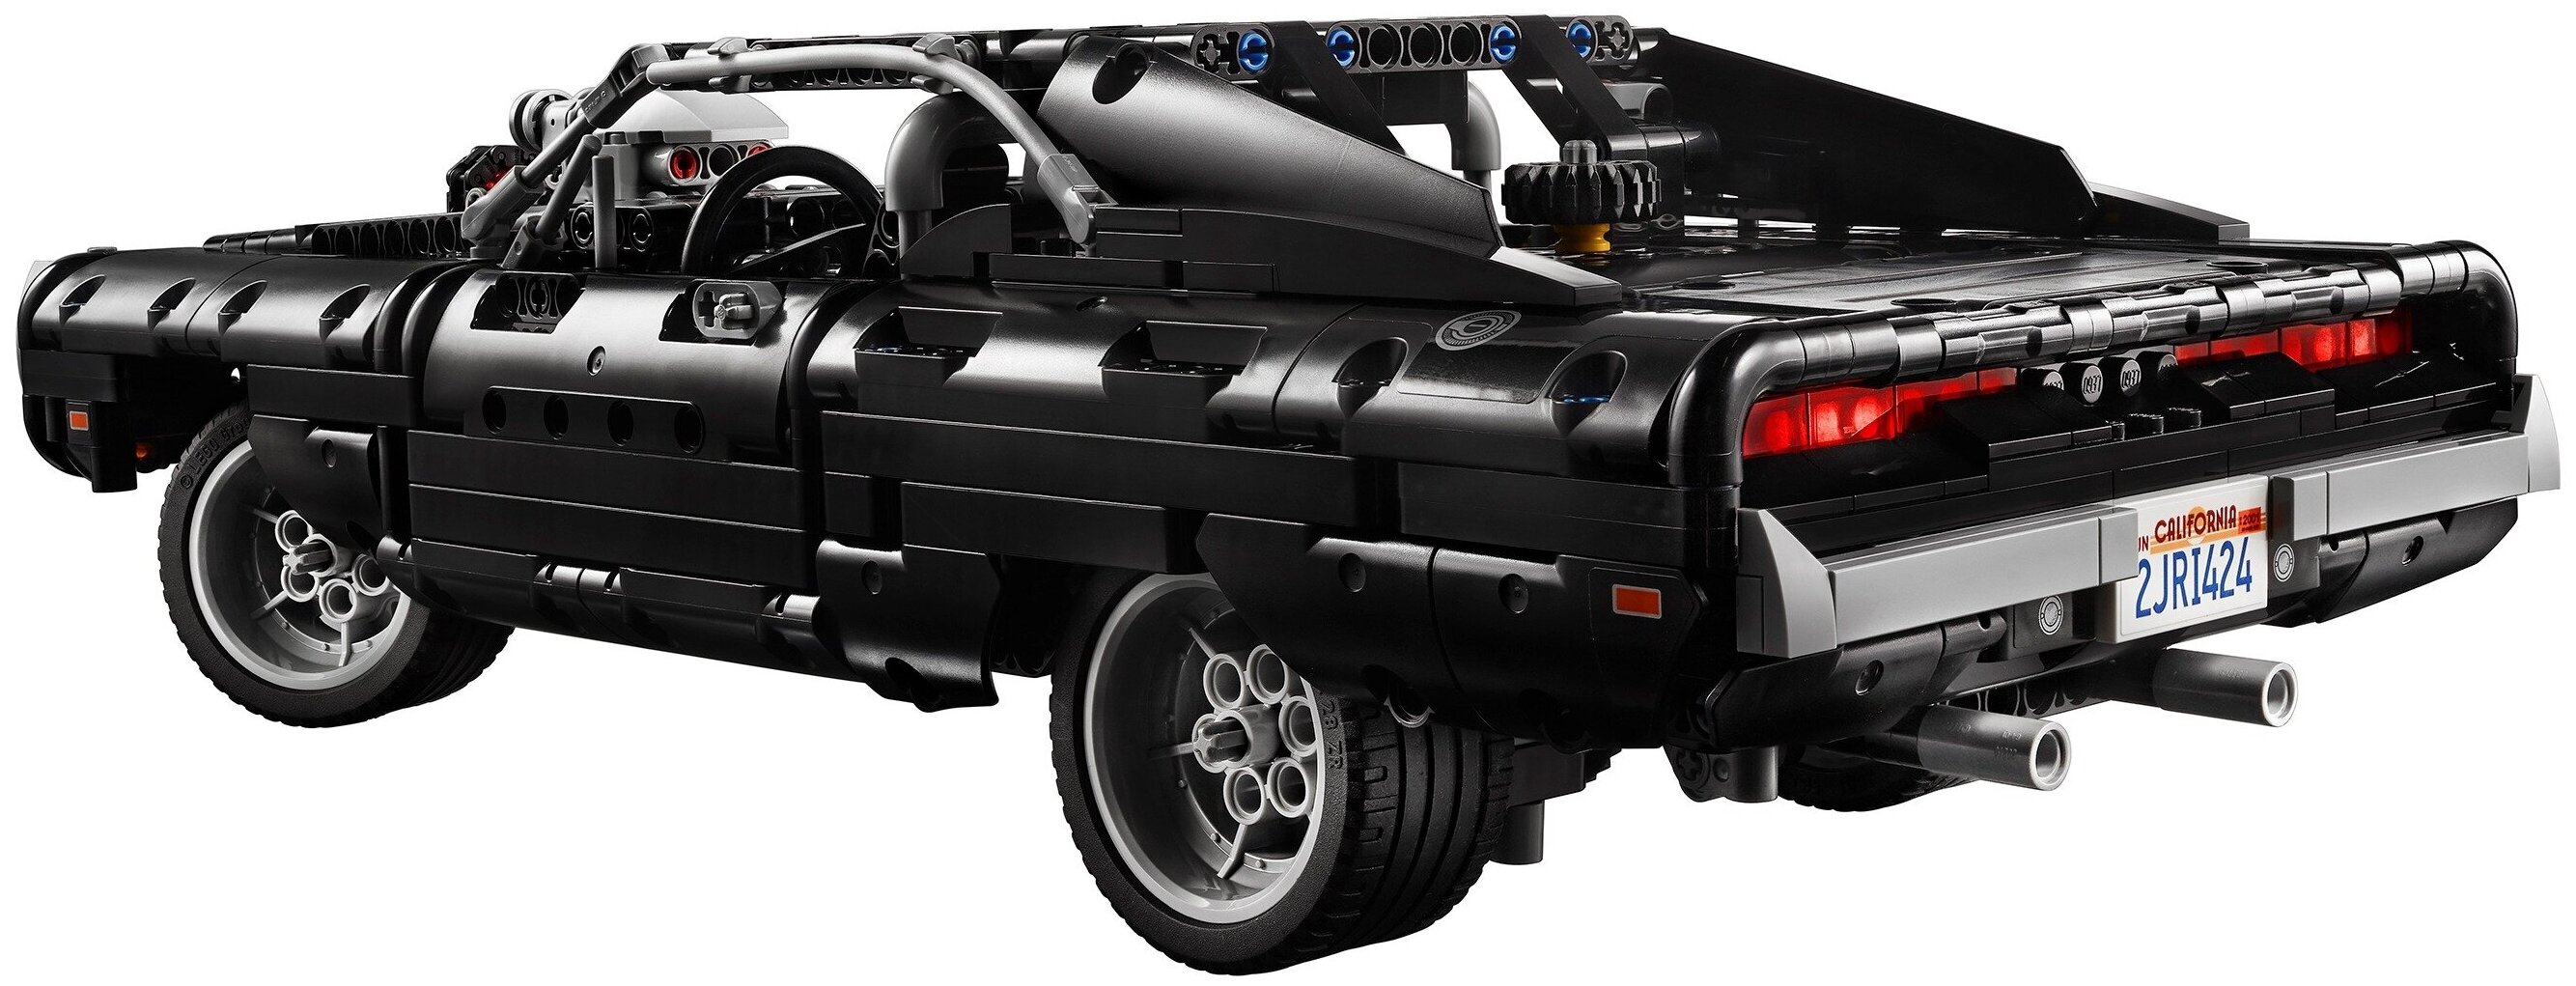 Цена Конструктор LEGO Dodge Charger Technic 42111 Доминика Торетто